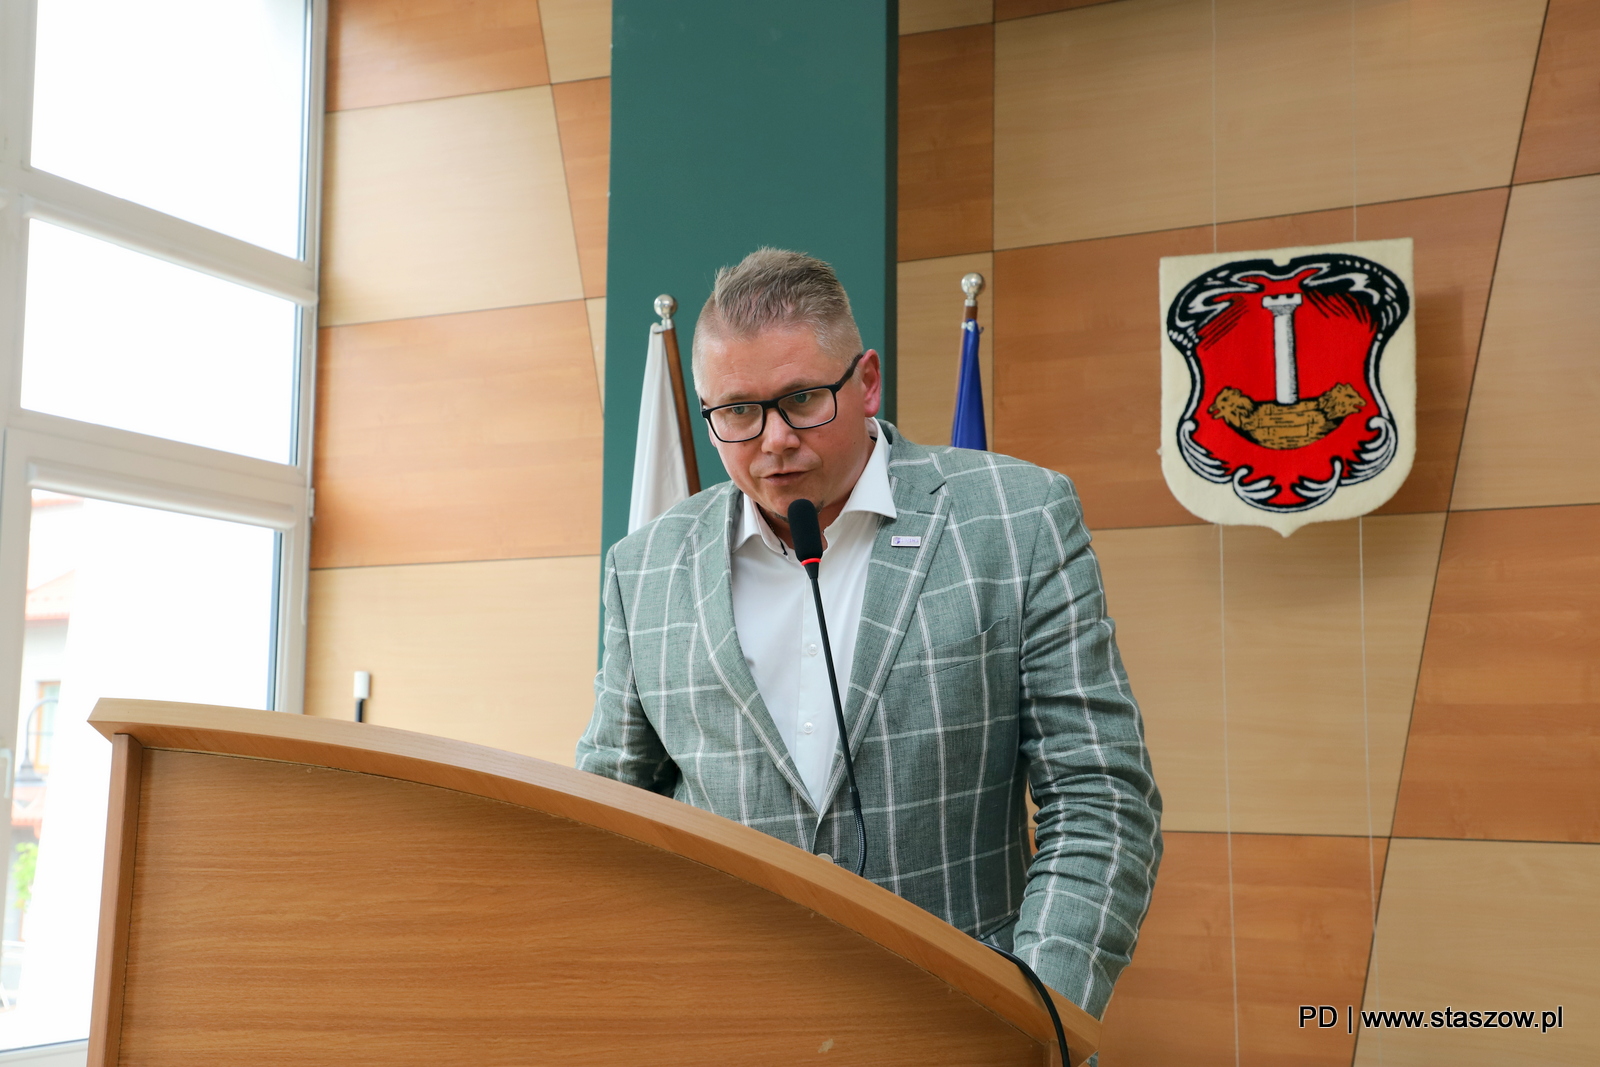 CV Sesja Rady Miejskiej w Staszowie